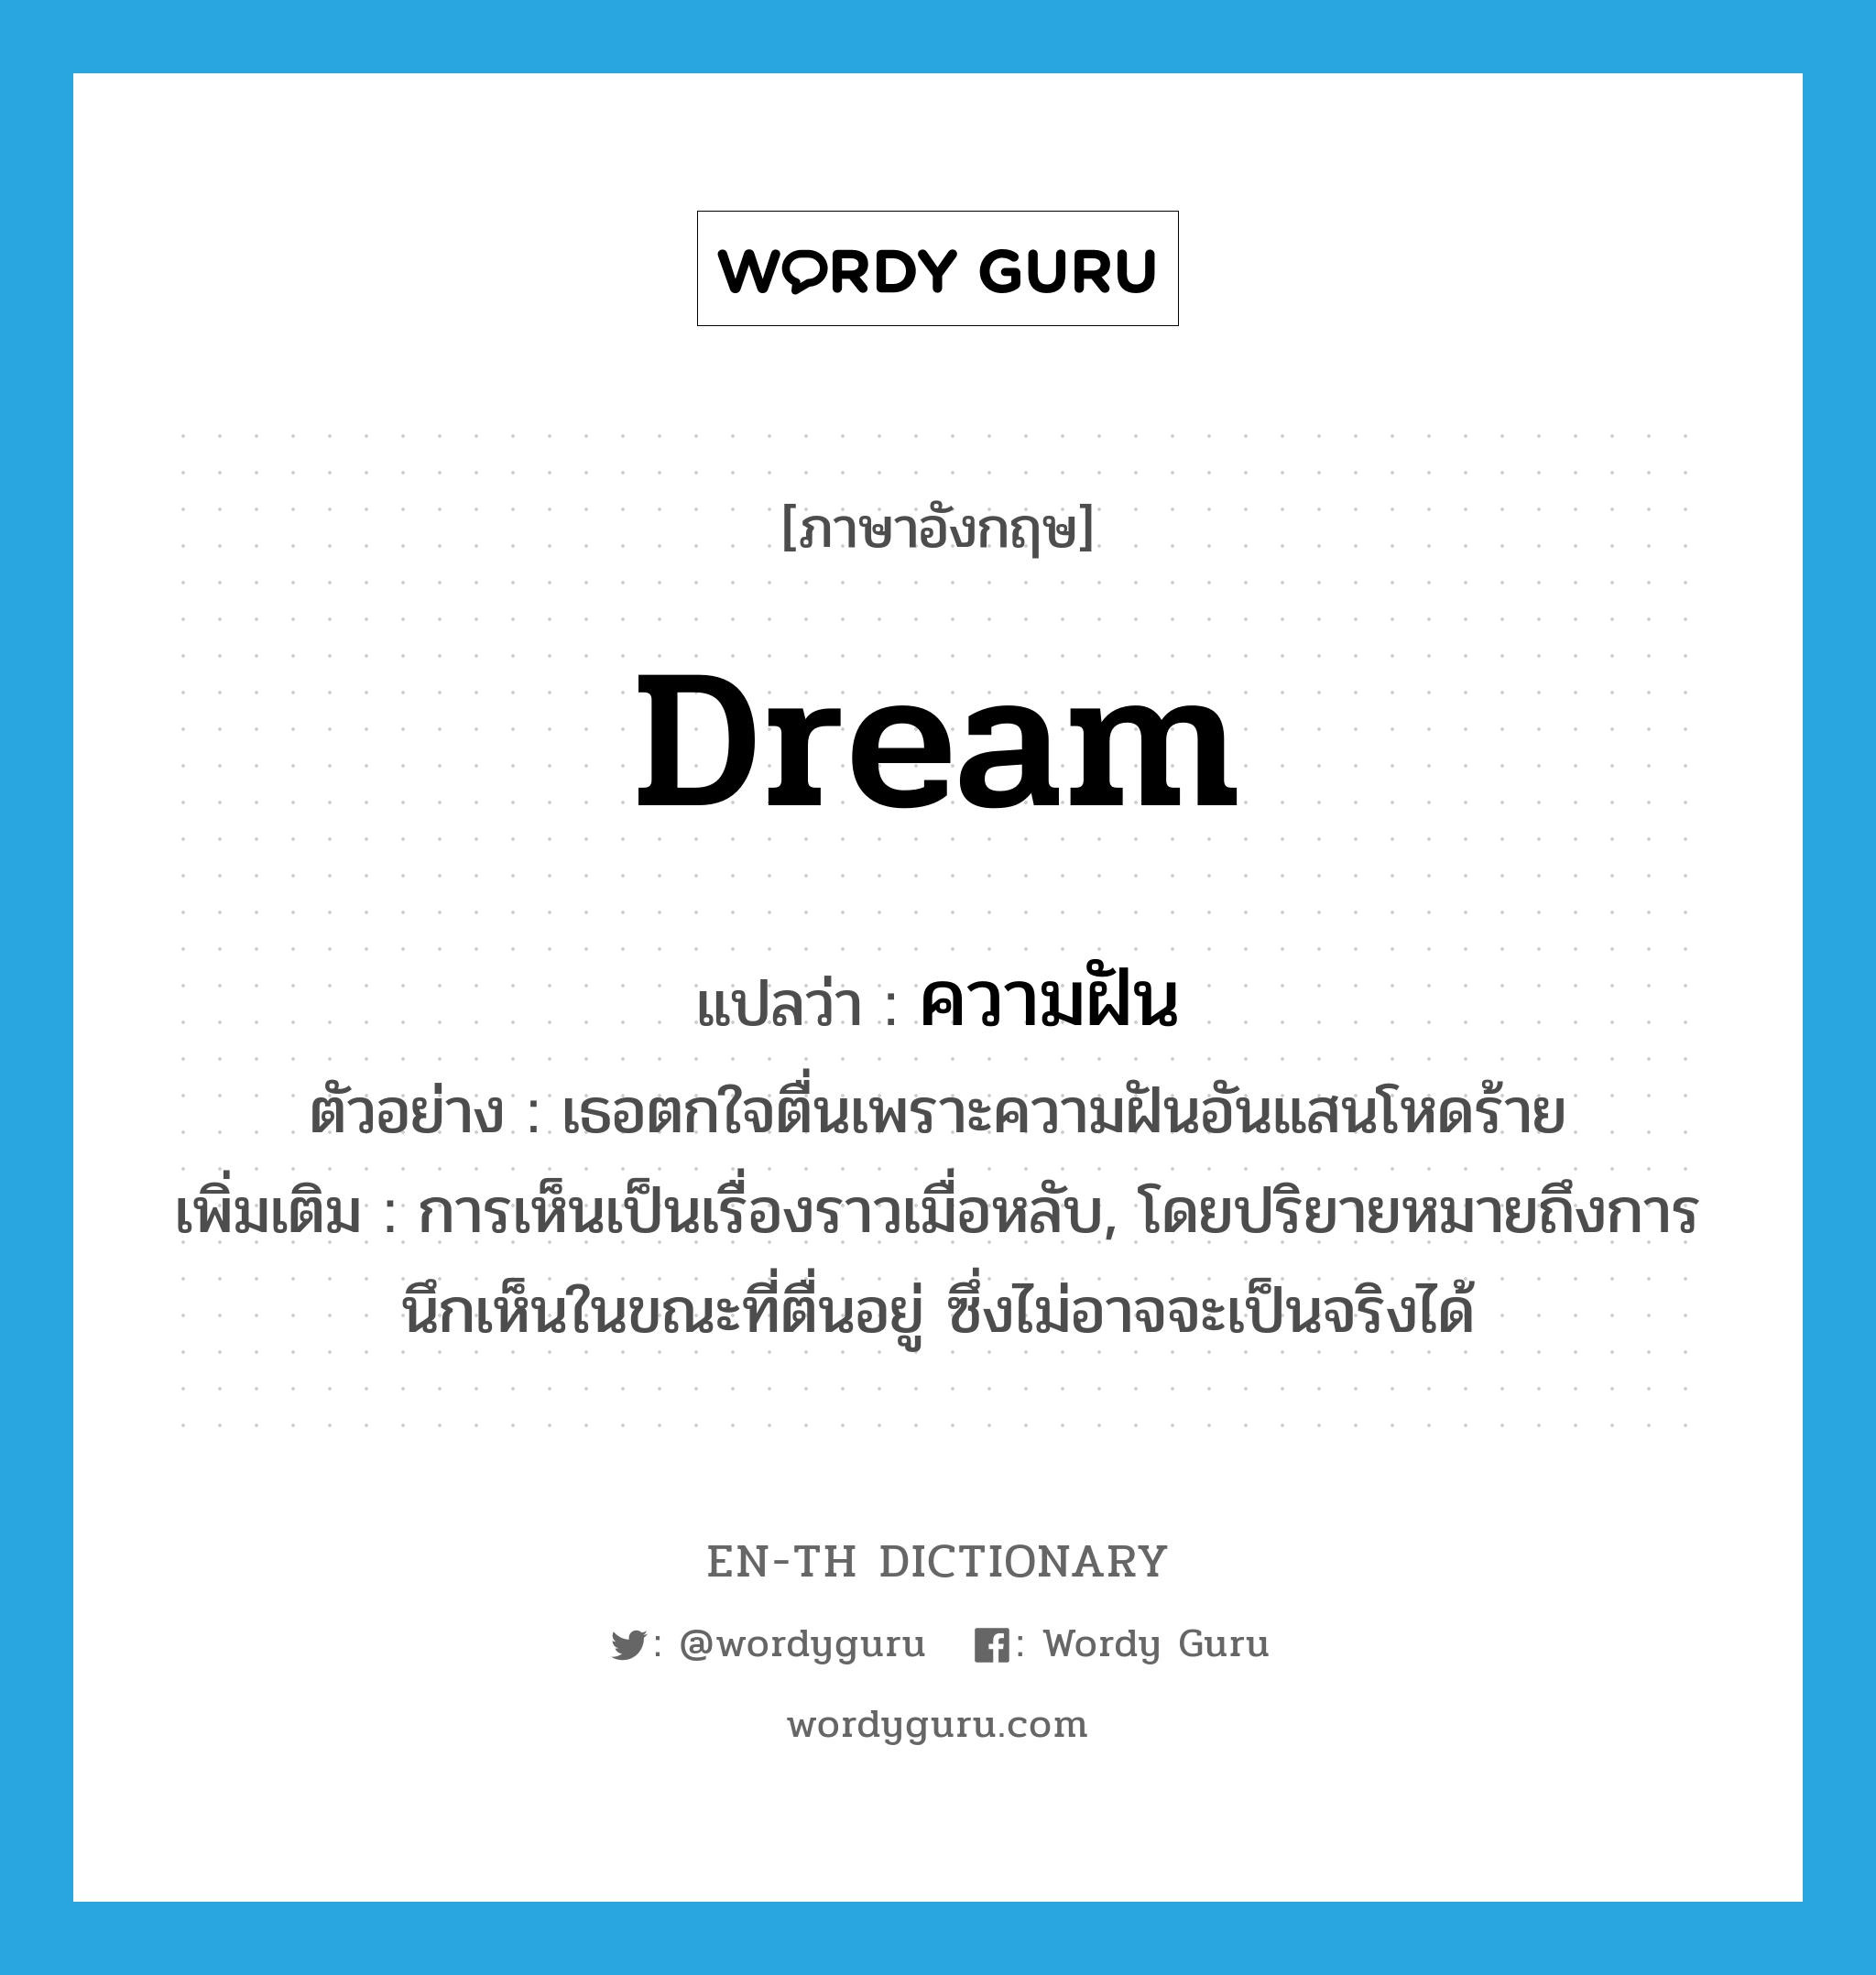 ความฝัน ภาษาอังกฤษ?, คำศัพท์ภาษาอังกฤษ ความฝัน แปลว่า dream ประเภท N ตัวอย่าง เธอตกใจตื่นเพราะความฝันอันแสนโหดร้าย เพิ่มเติม การเห็นเป็นเรื่องราวเมื่อหลับ, โดยปริยายหมายถึงการนึกเห็นในขณะที่ตื่นอยู่ ซึ่งไม่อาจจะเป็นจริงได้ หมวด N